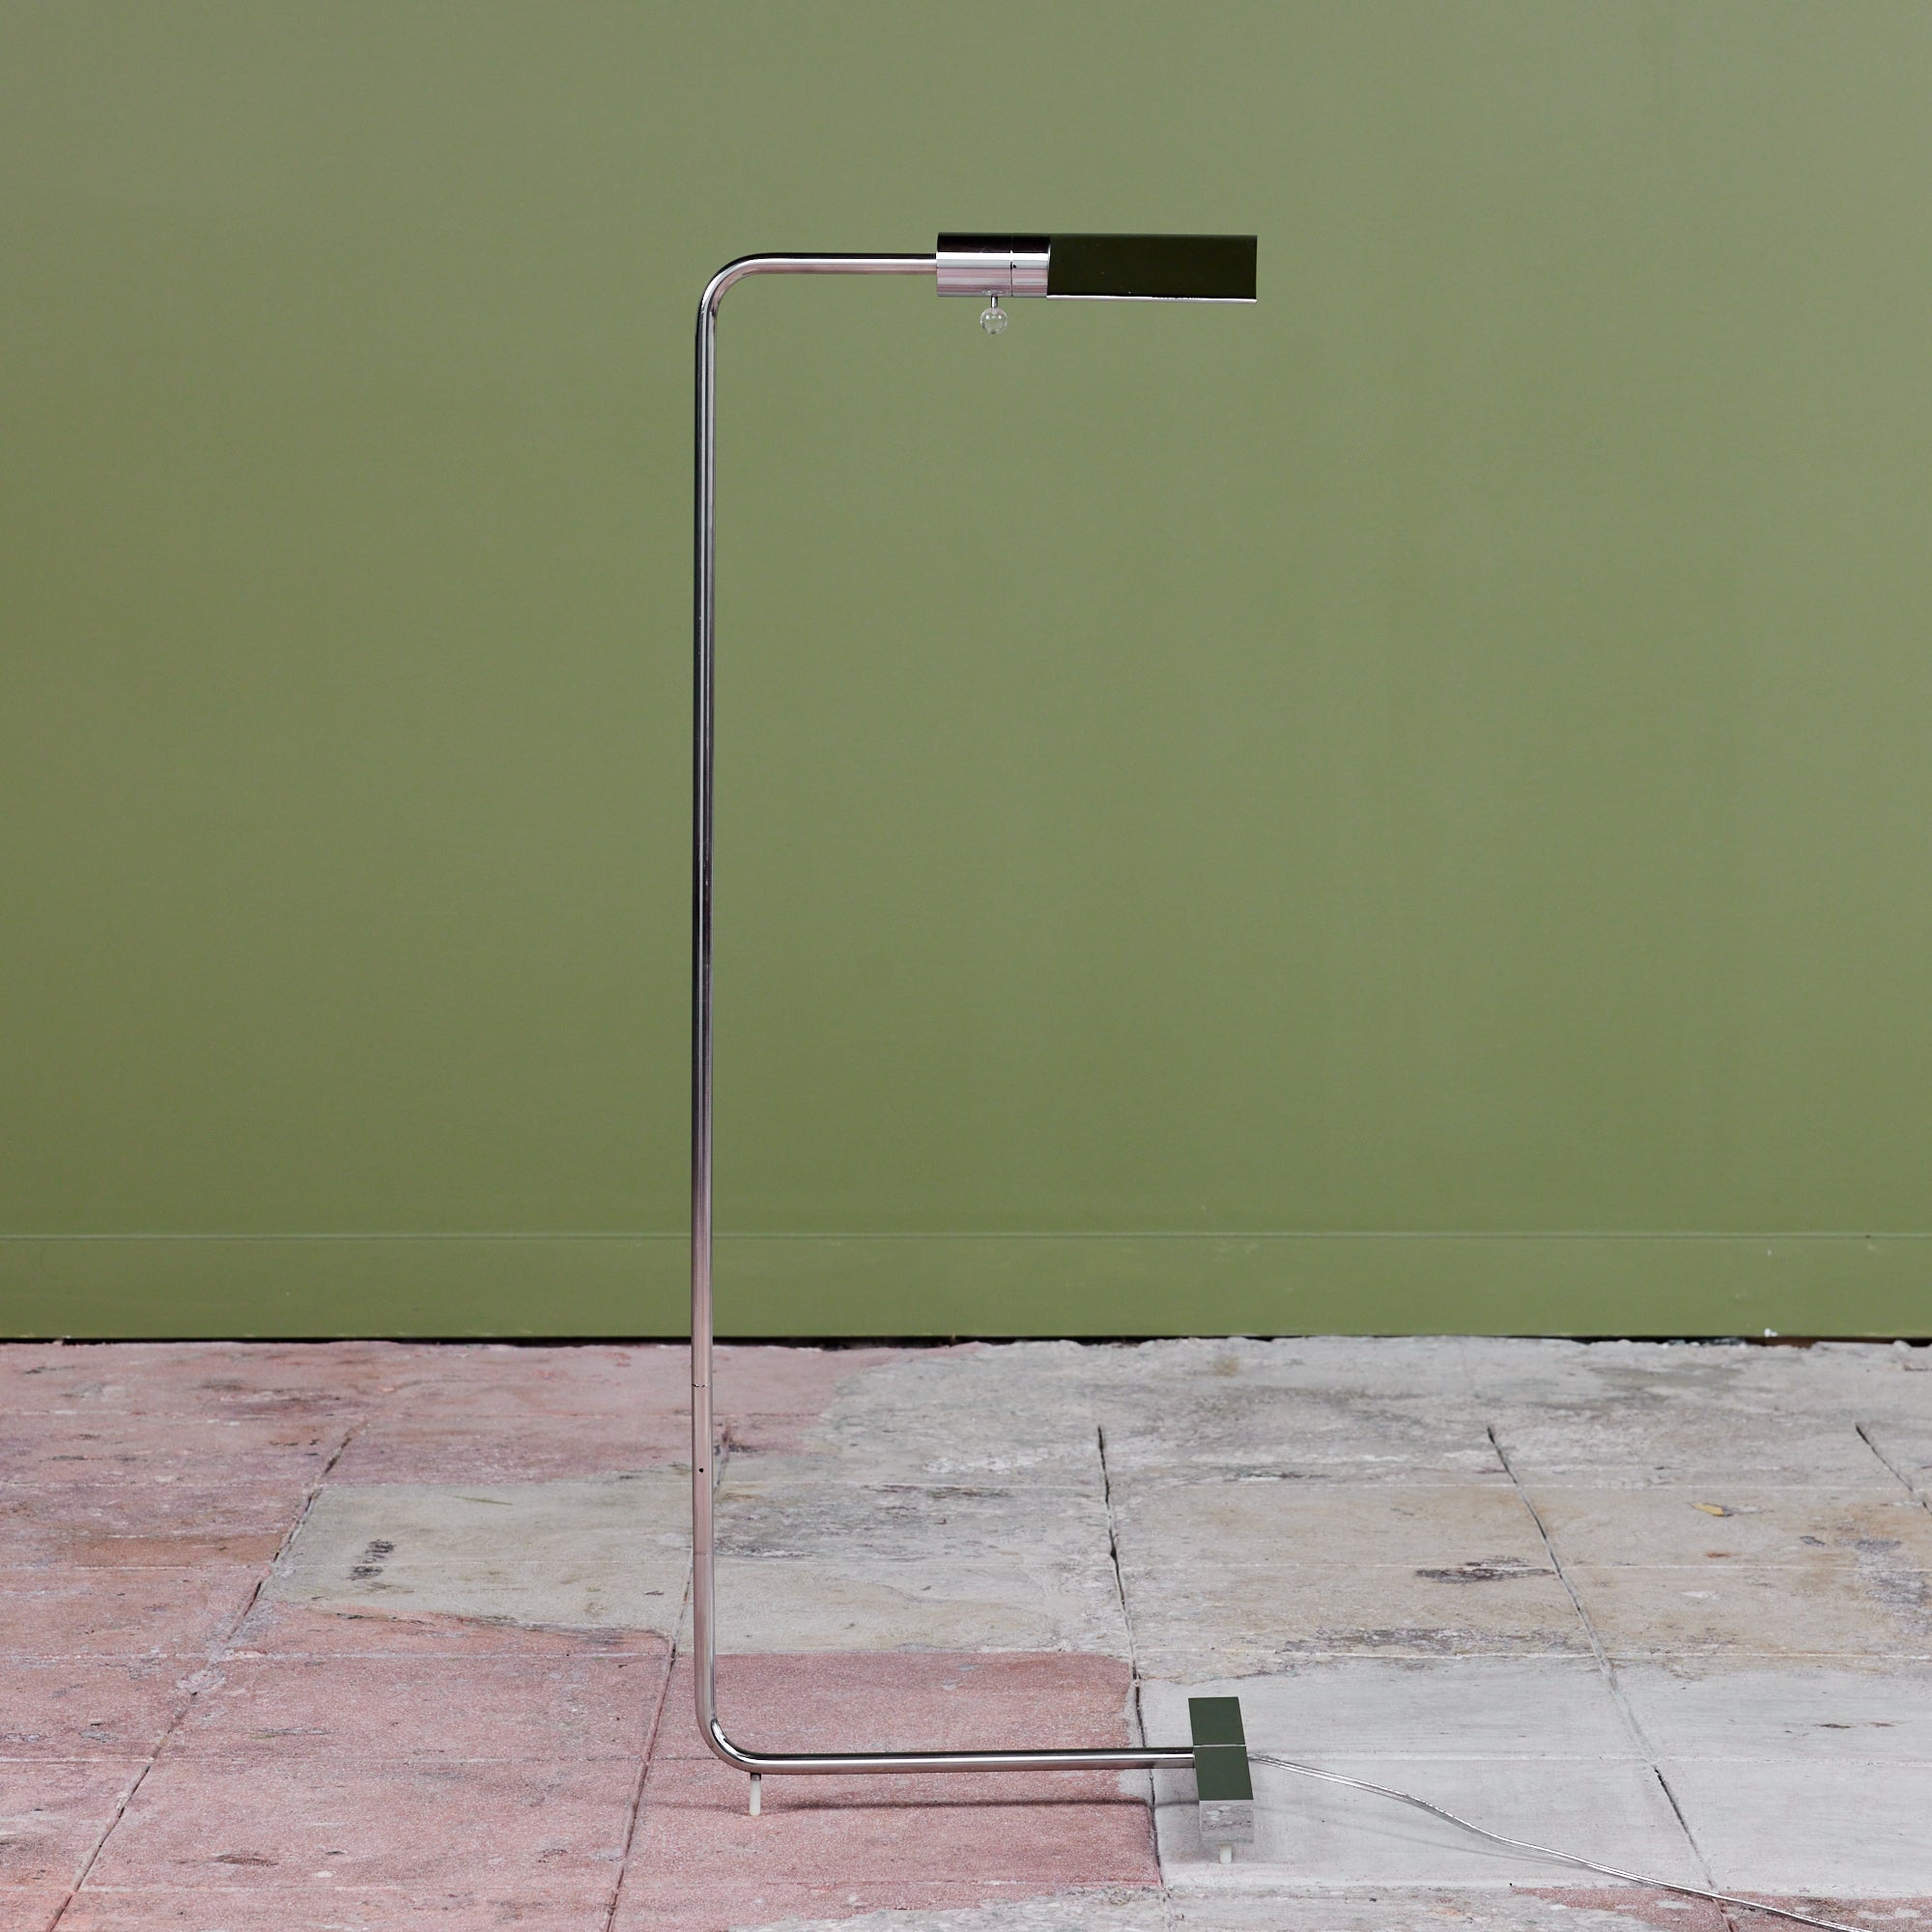 Cedric Hartman Stainless Steel Floor Lamp